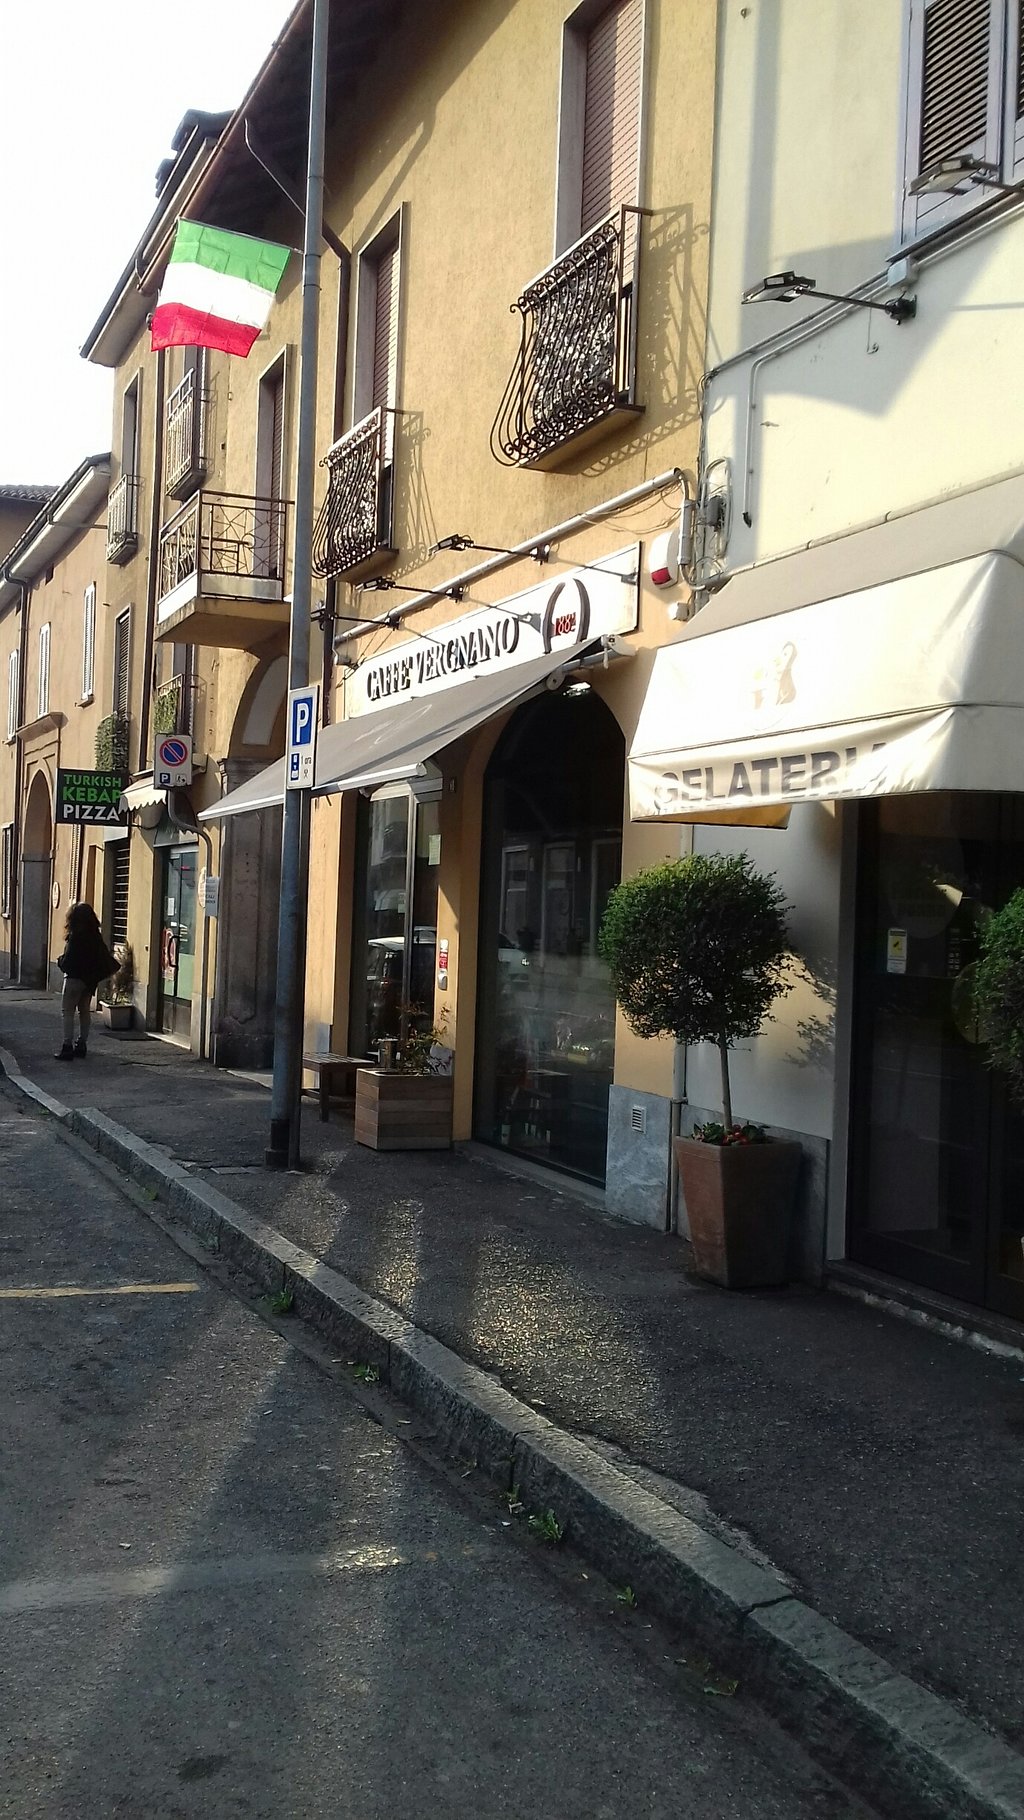 Caffe Vergnano, Agrate Brianza